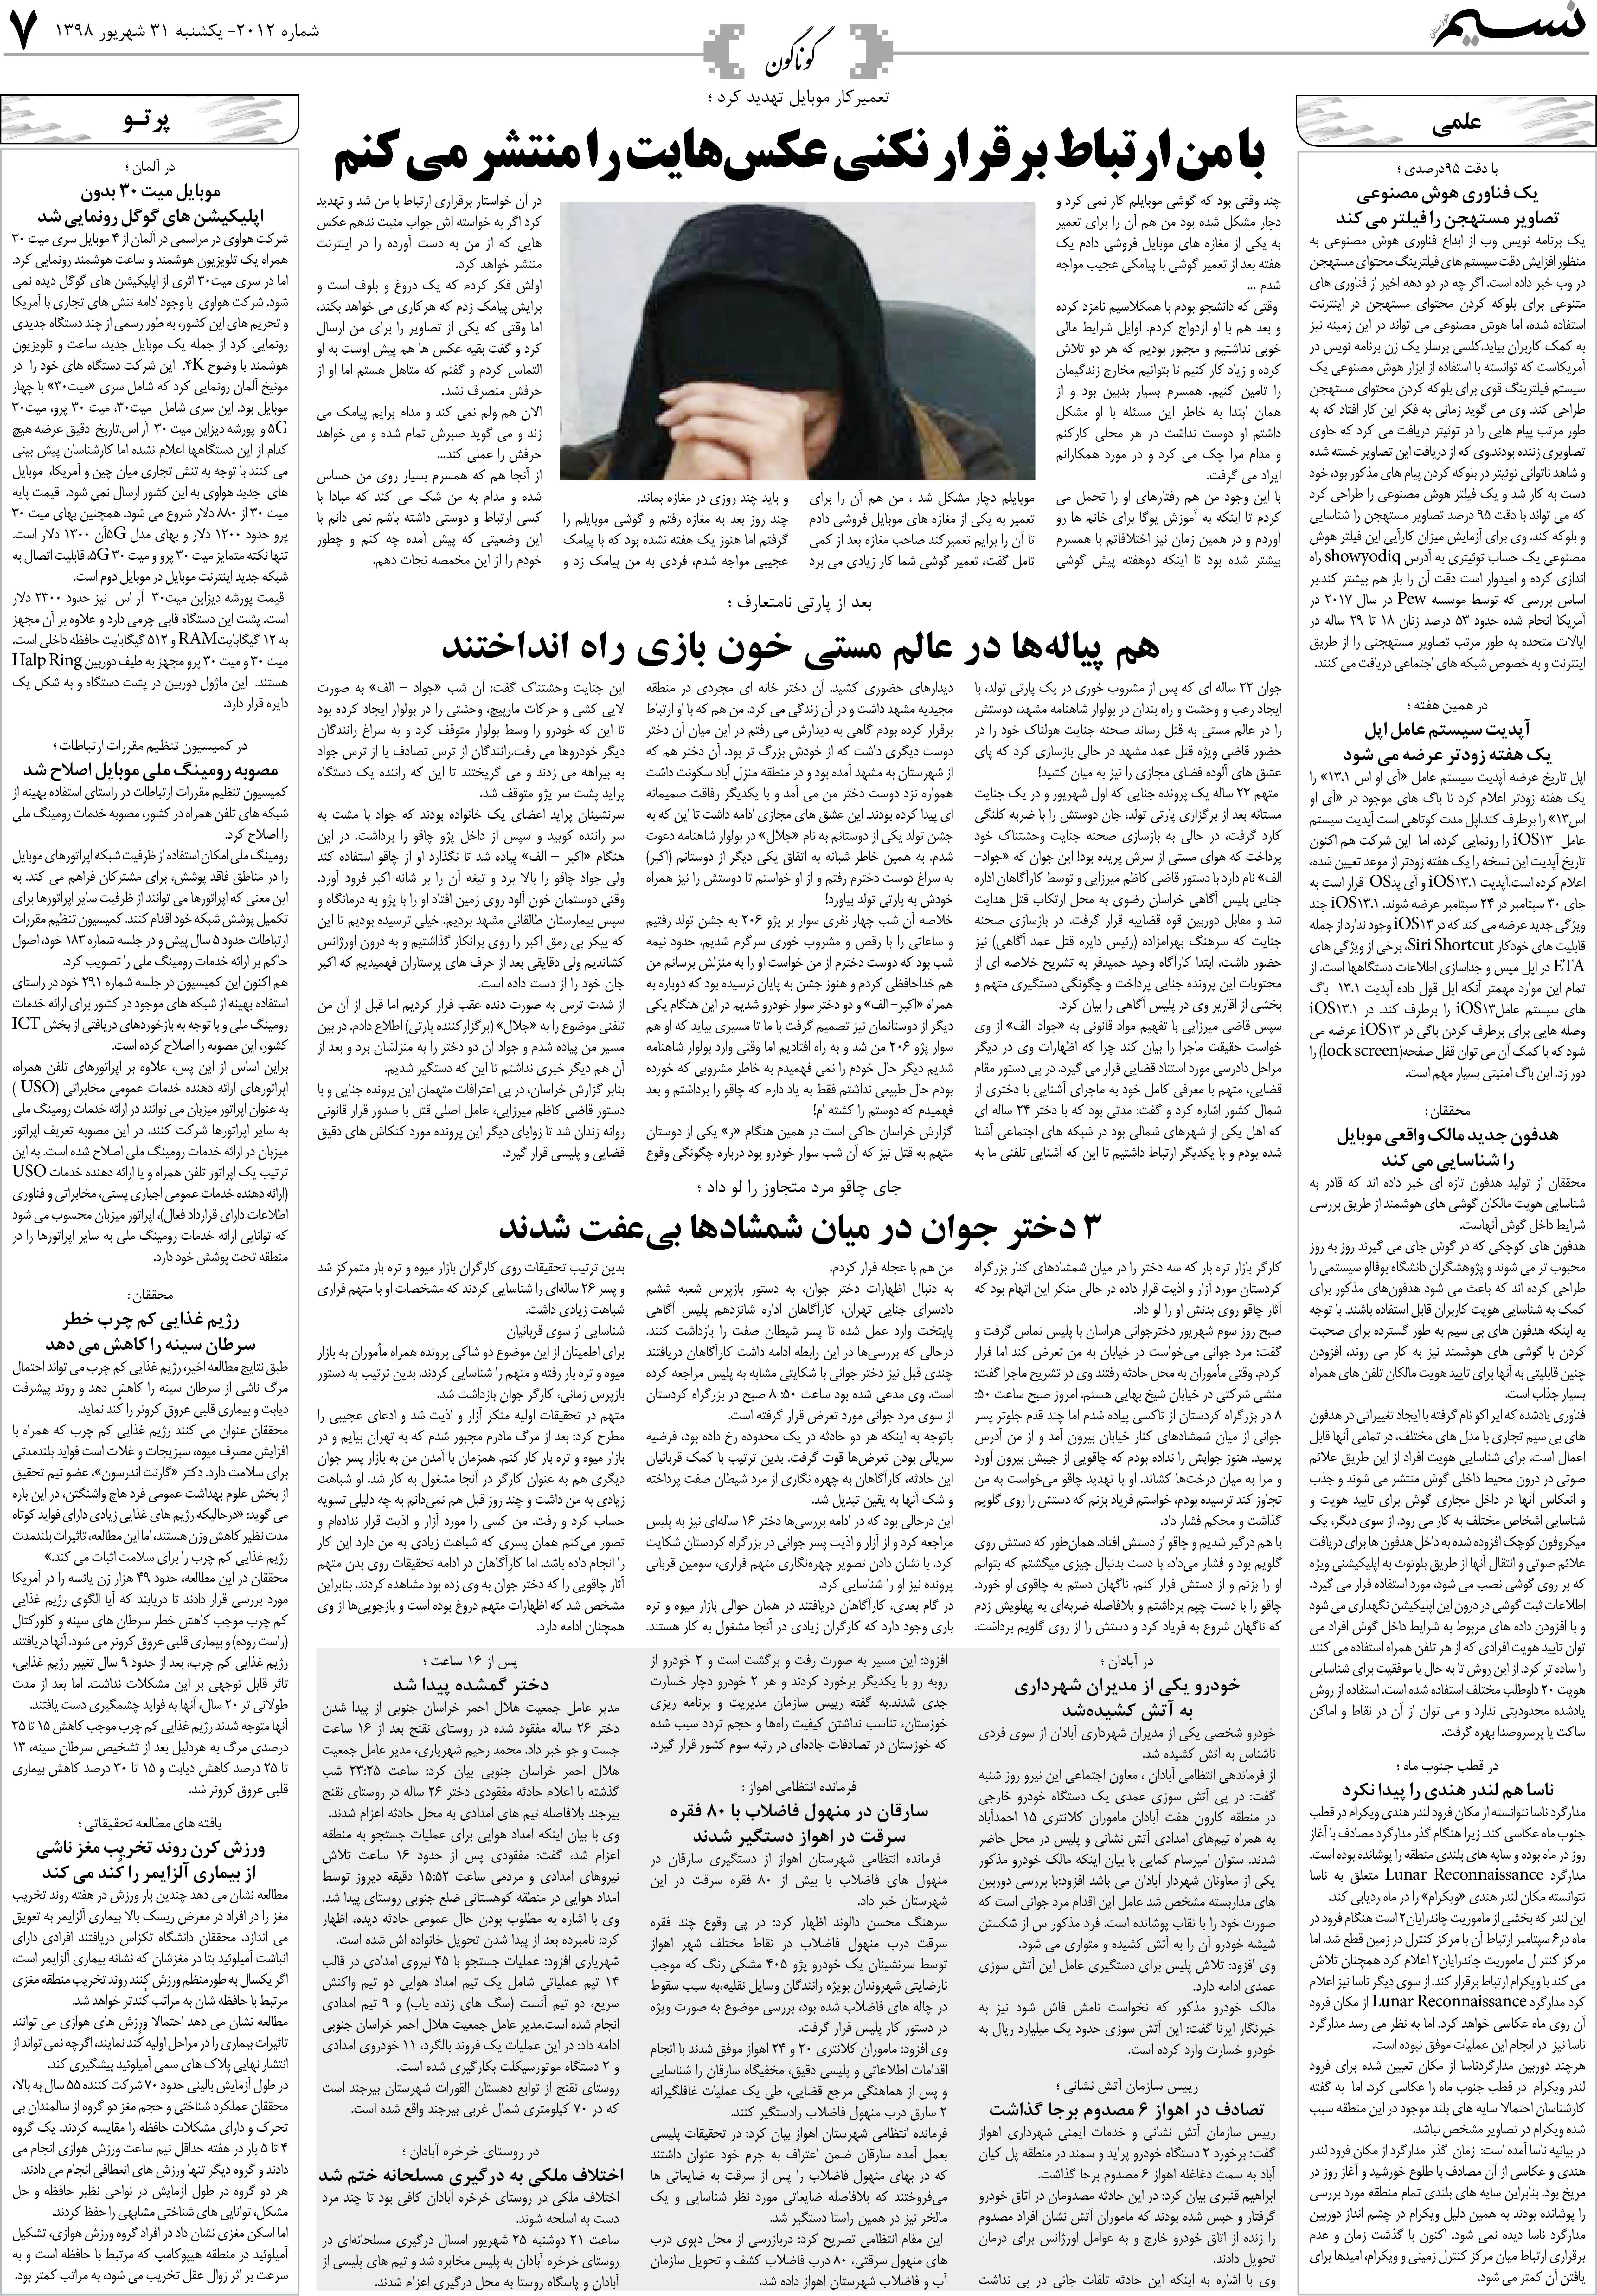 صفحه گوناگون روزنامه نسیم شماره 2012